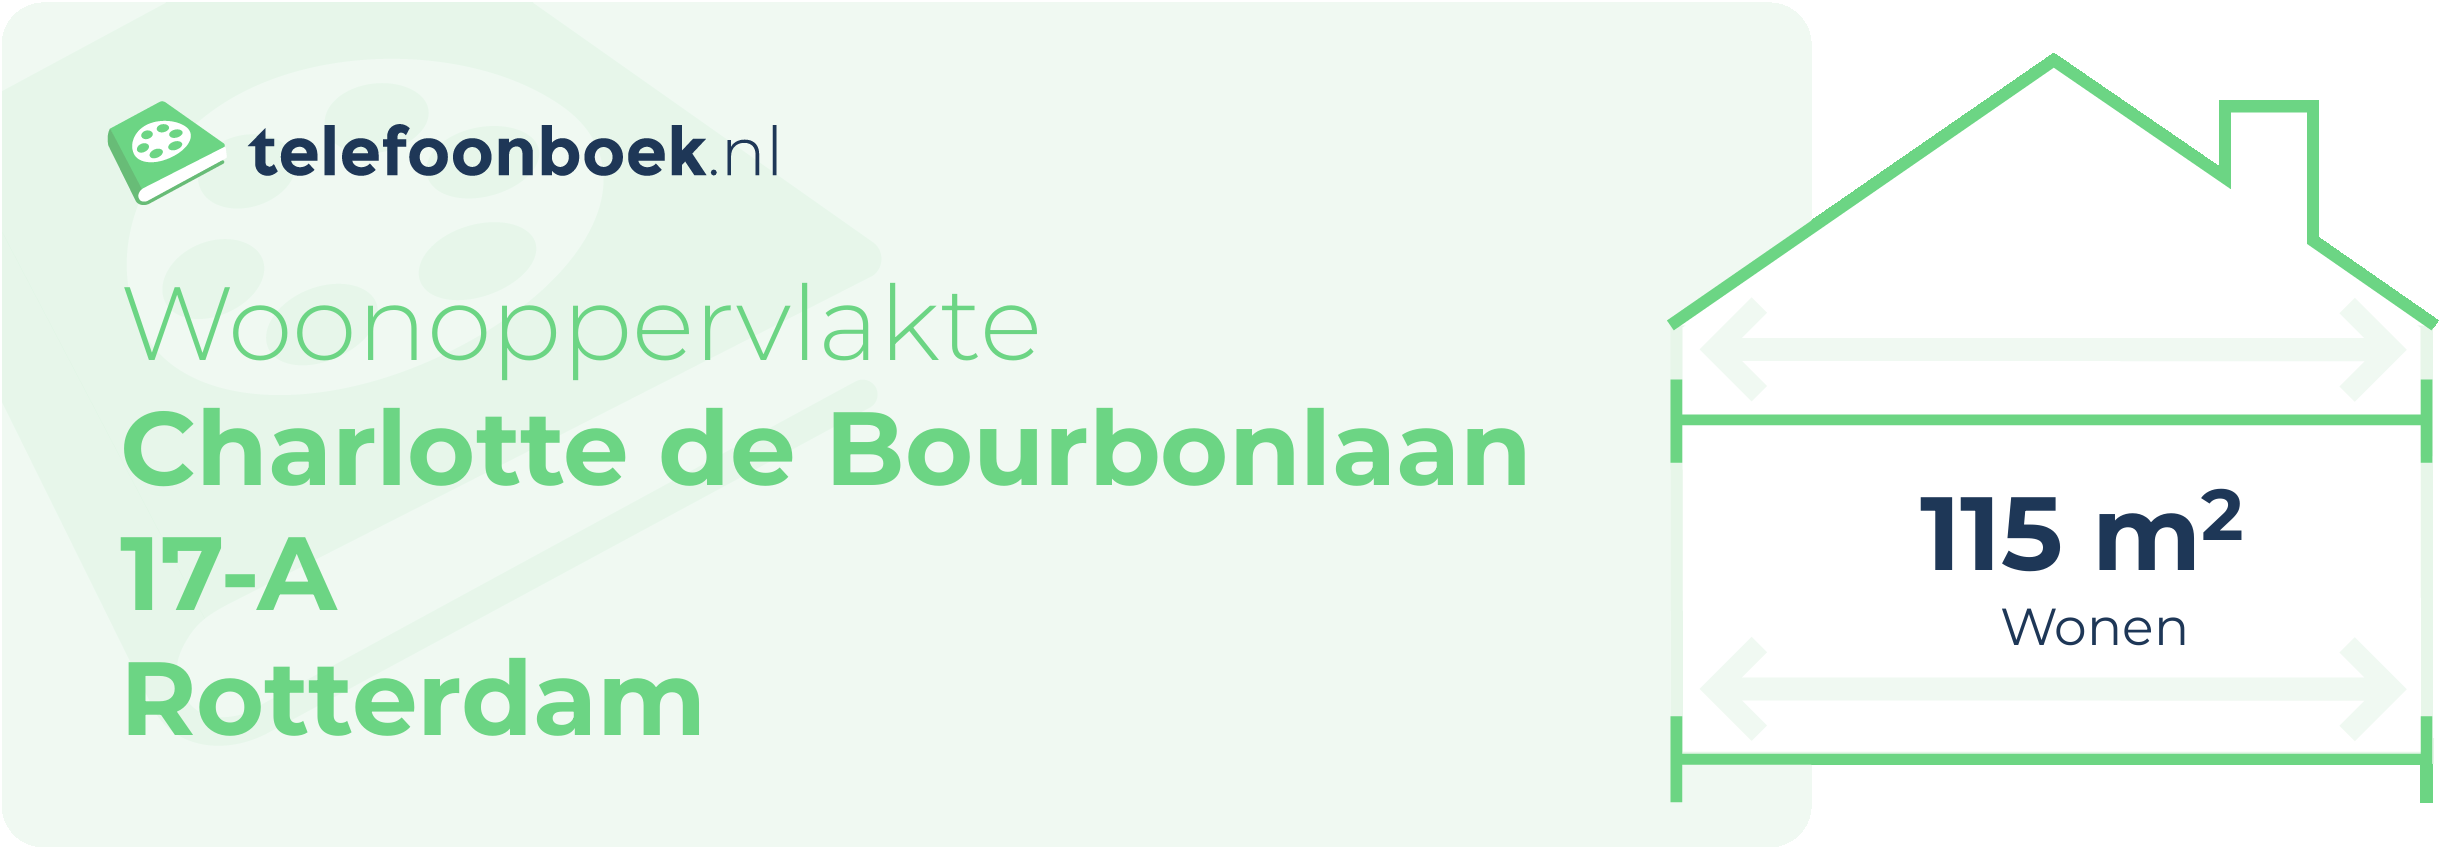 Woonoppervlakte Charlotte De Bourbonlaan 17-A Rotterdam